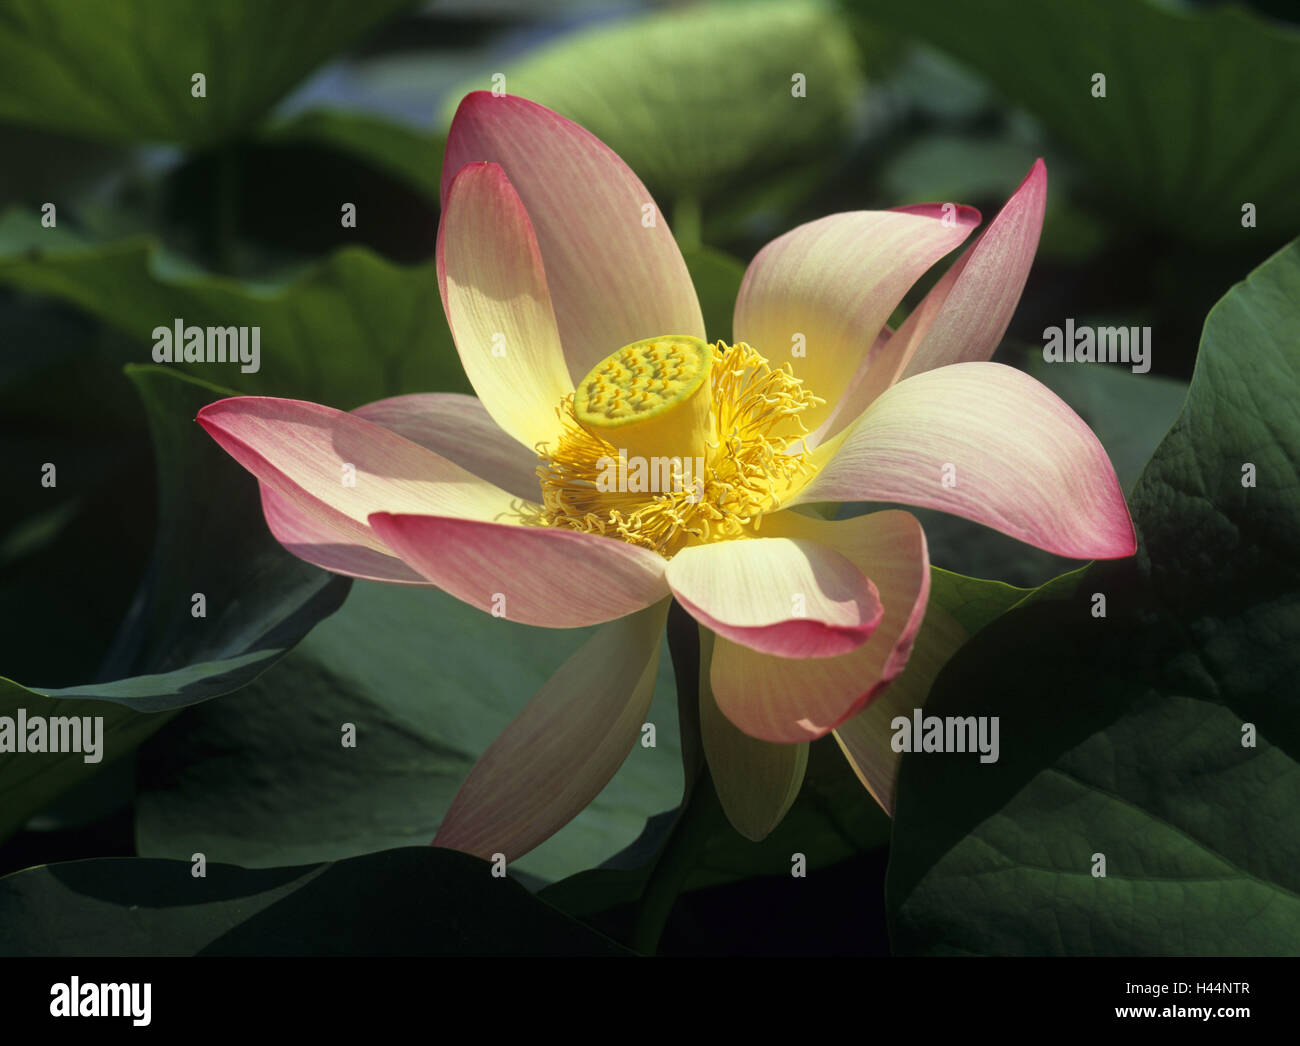 Indian fiore di loto Nelumbo nucifera, blossom, infructescence, dettaglio Foto Stock